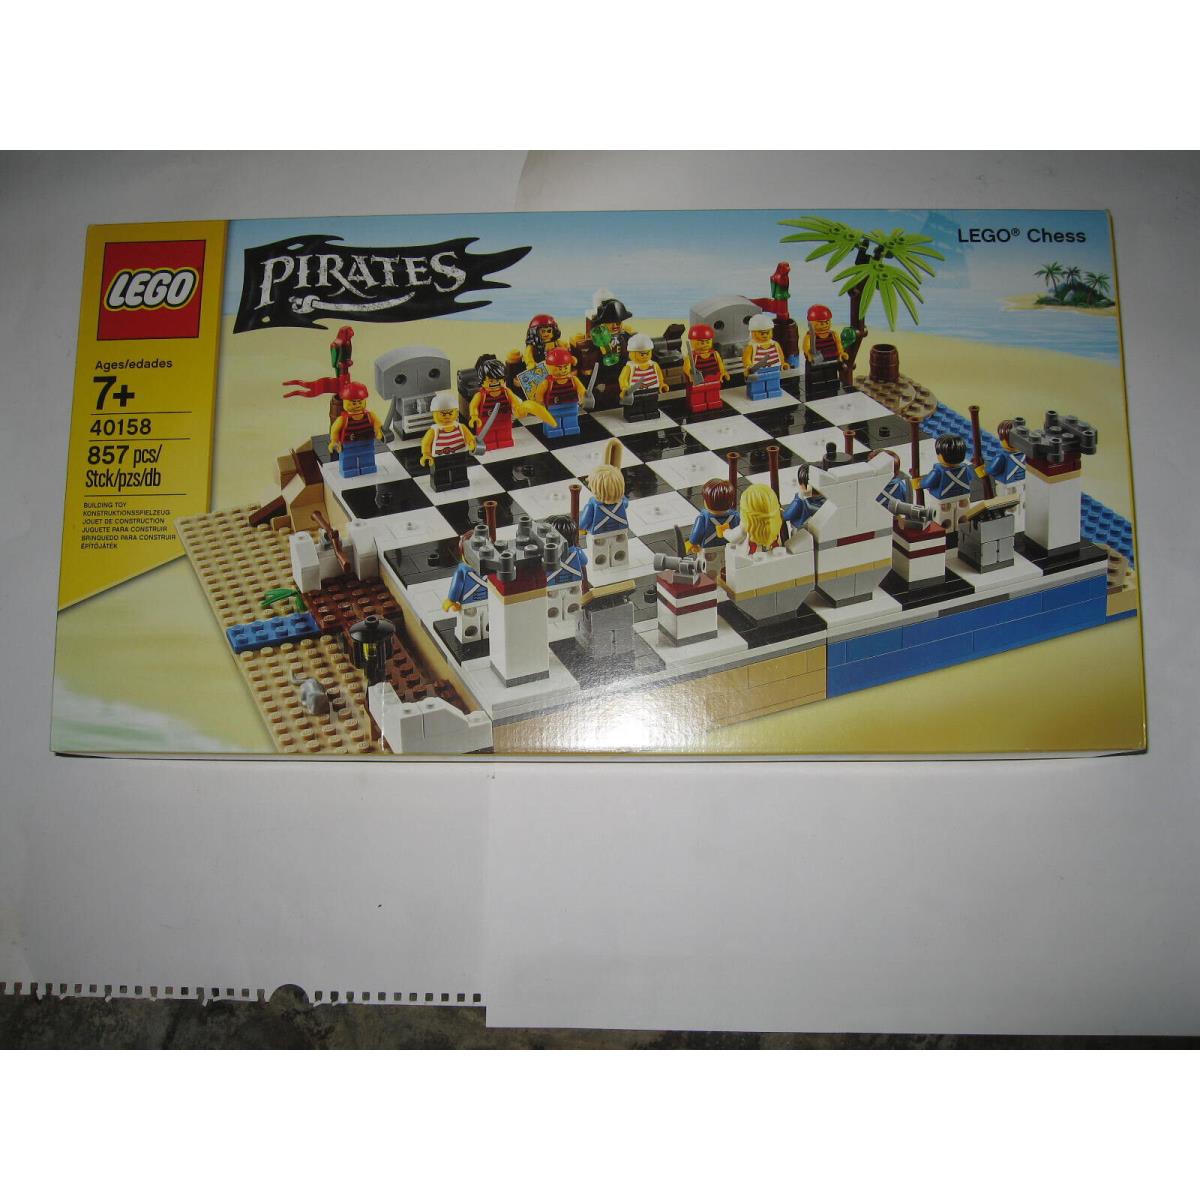 Lego 40158 Pirates Chess Set